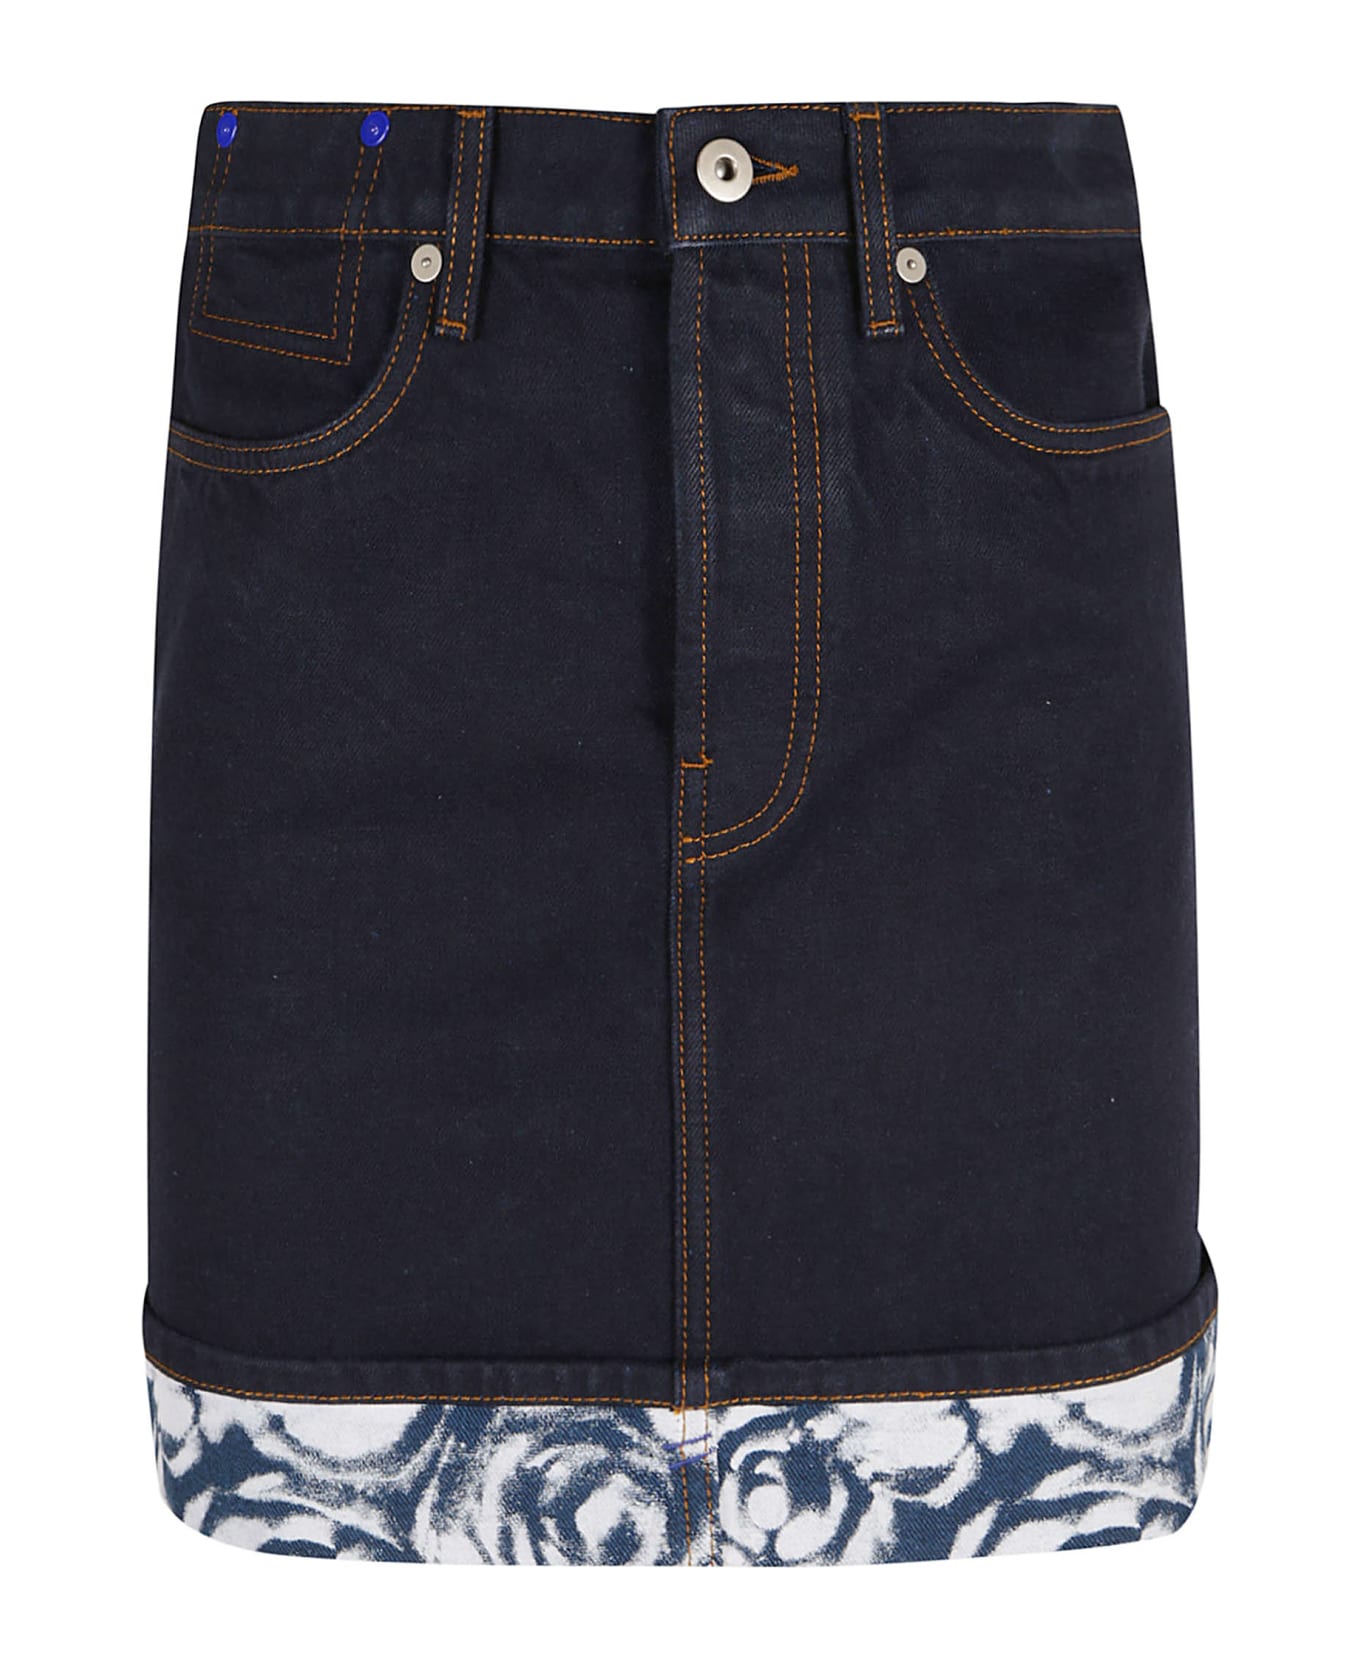 Burberry Four Pockets Denim Short Skirt - Indigo Blue